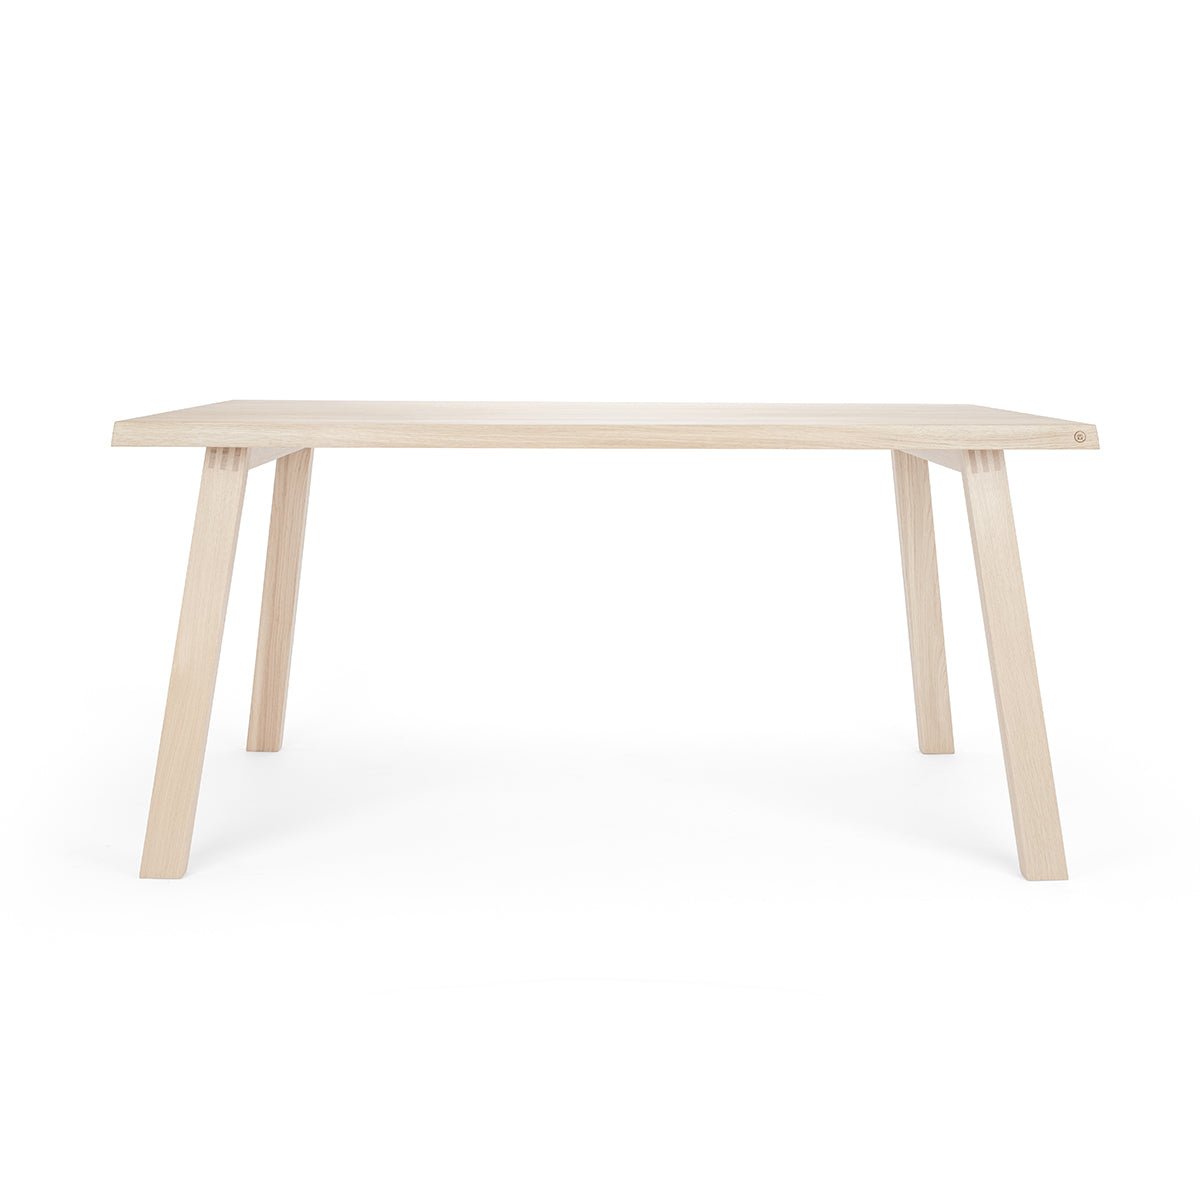 Table élégante »Fritz« en bois de chêne à l'aspect naturel